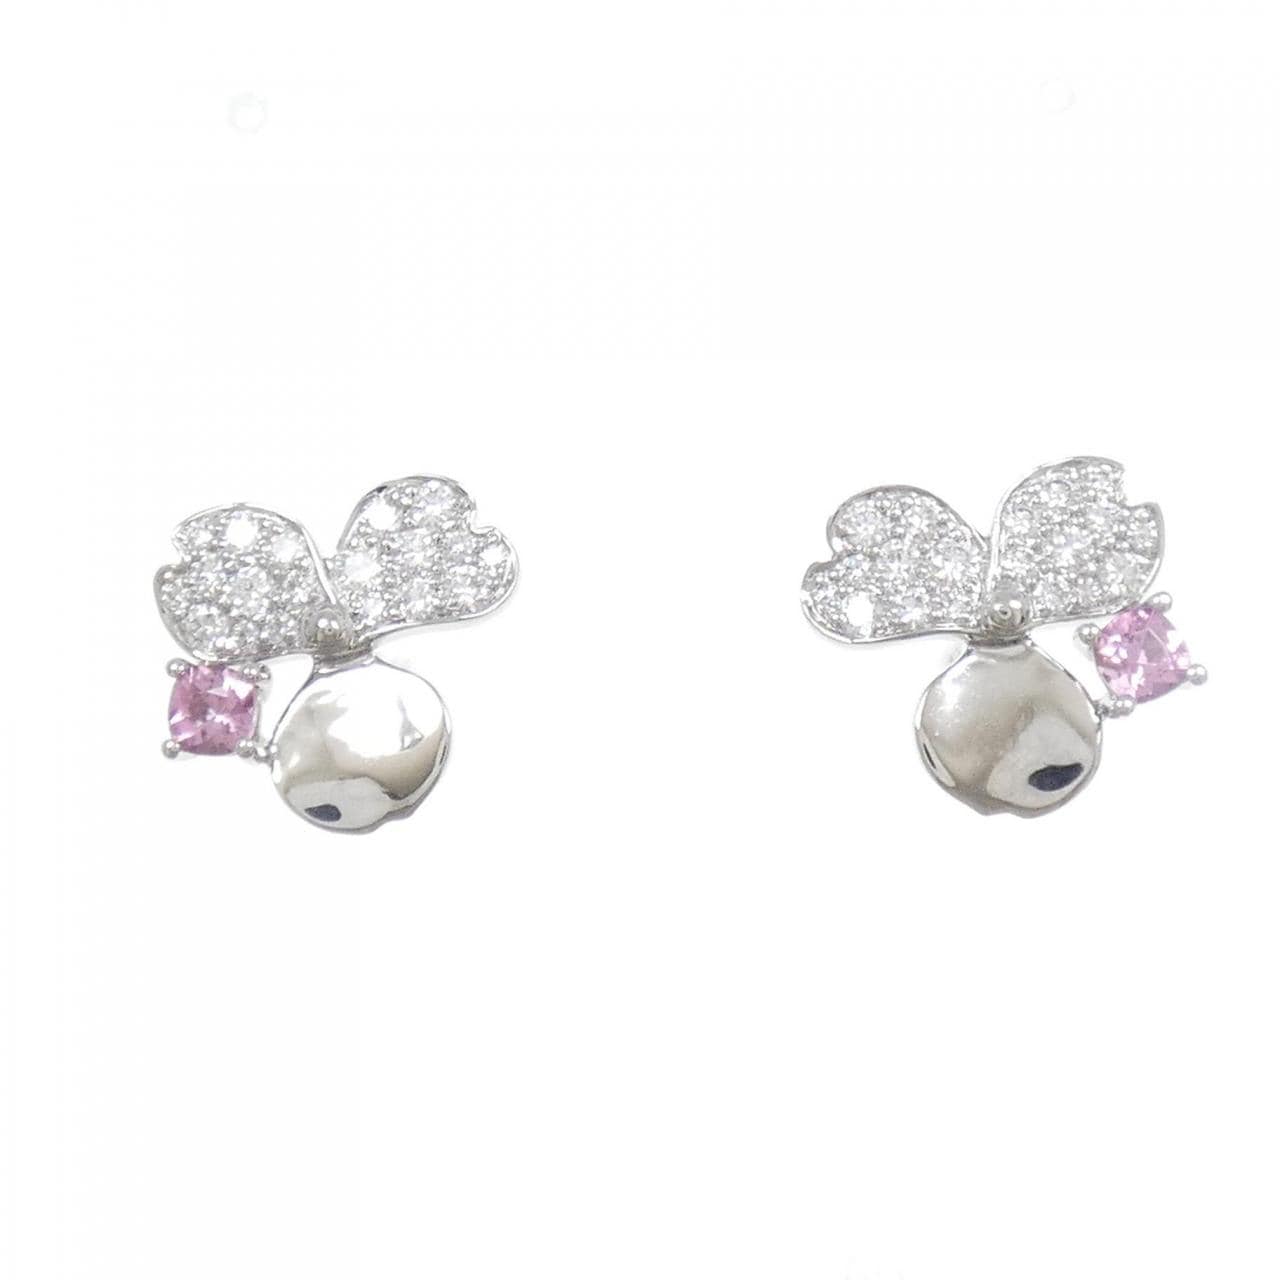 TIFFANY paper flower earrings